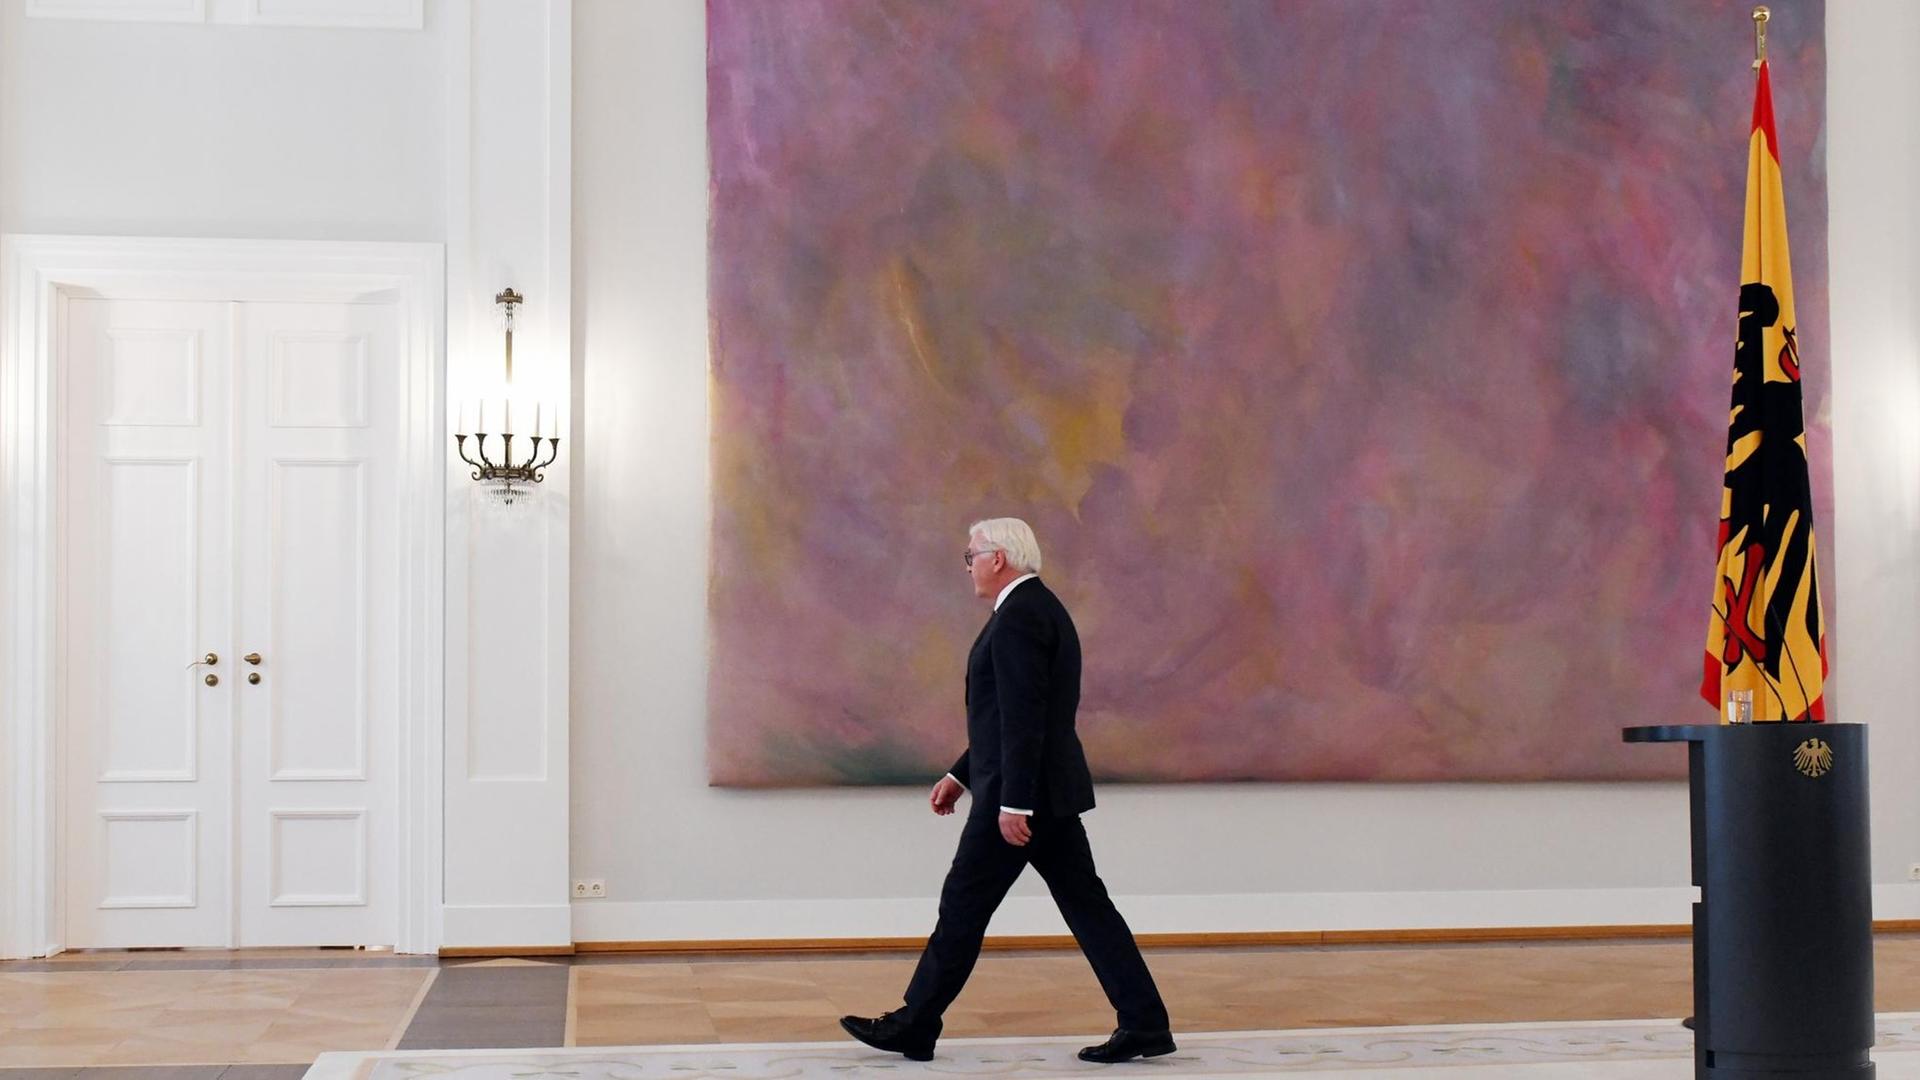 Bundespräsident Frank-Walter Steinmeier verlässt den Raum im Schloss Bellevue, nachdem er eine Erklärung abgegeben hat